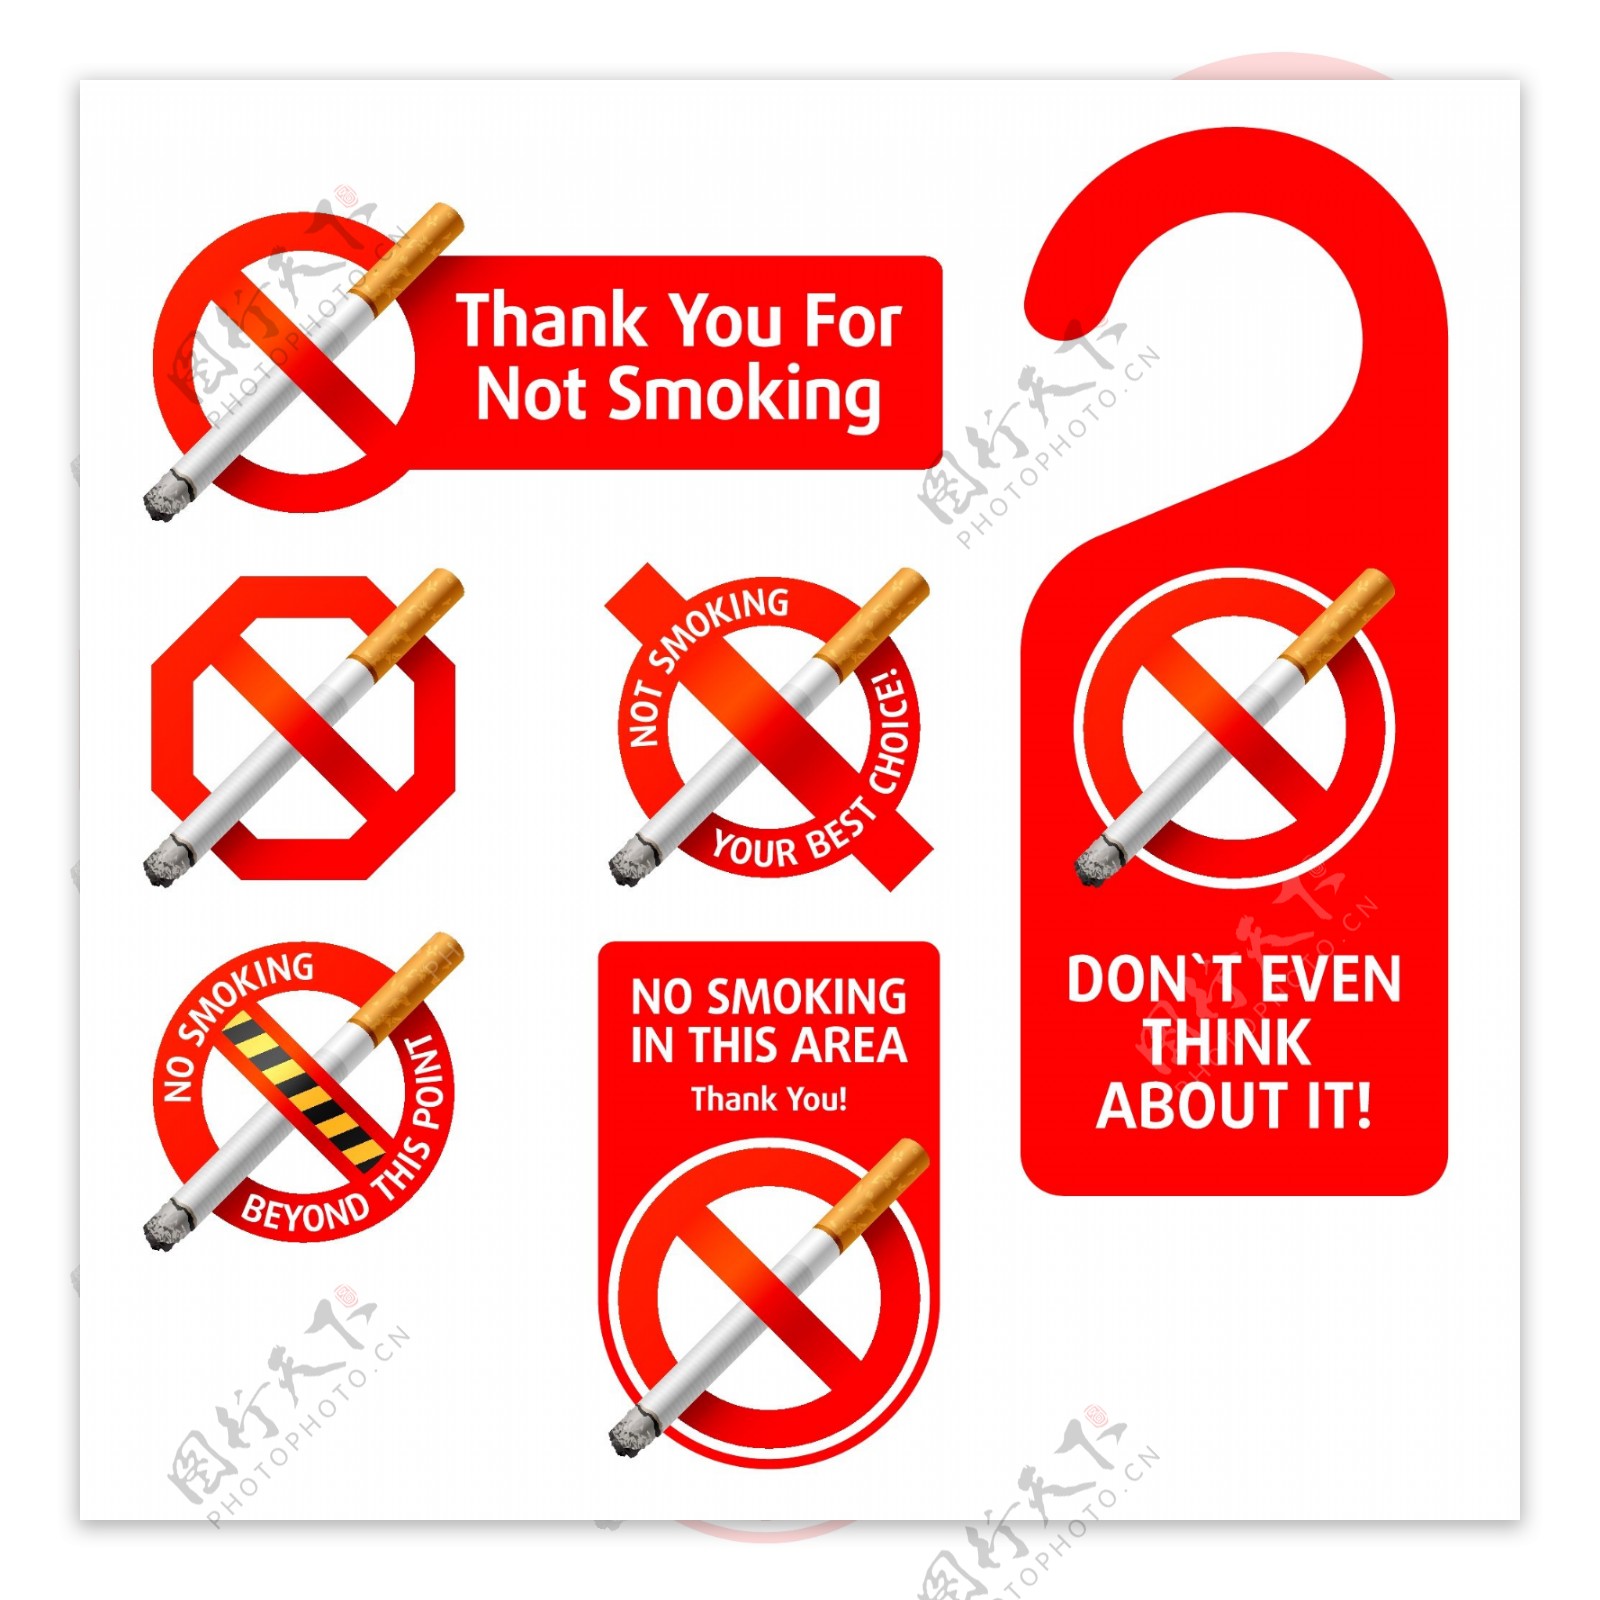 禁止吸烟的矢量图片免费